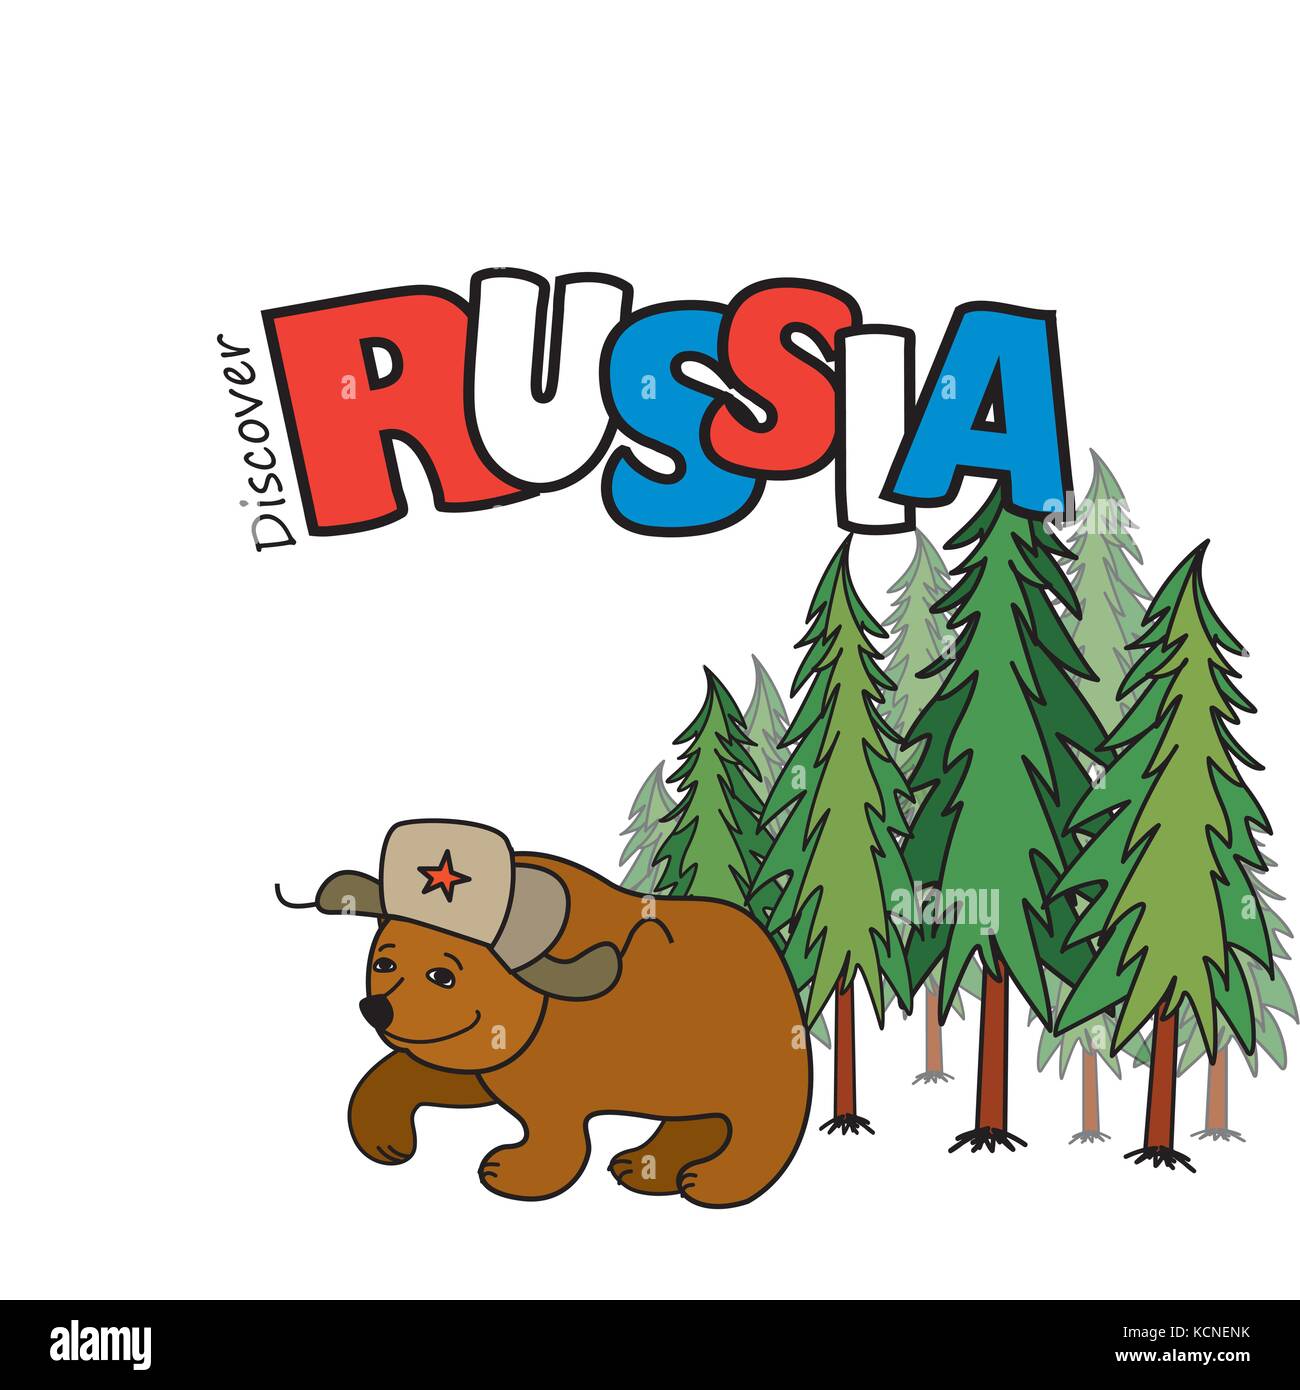 Russland. cartoon lächelnd ertragen in ein Cap mit Ohrenschützern, Pinienwald im Hintergrund. Vektor Stock Vektor